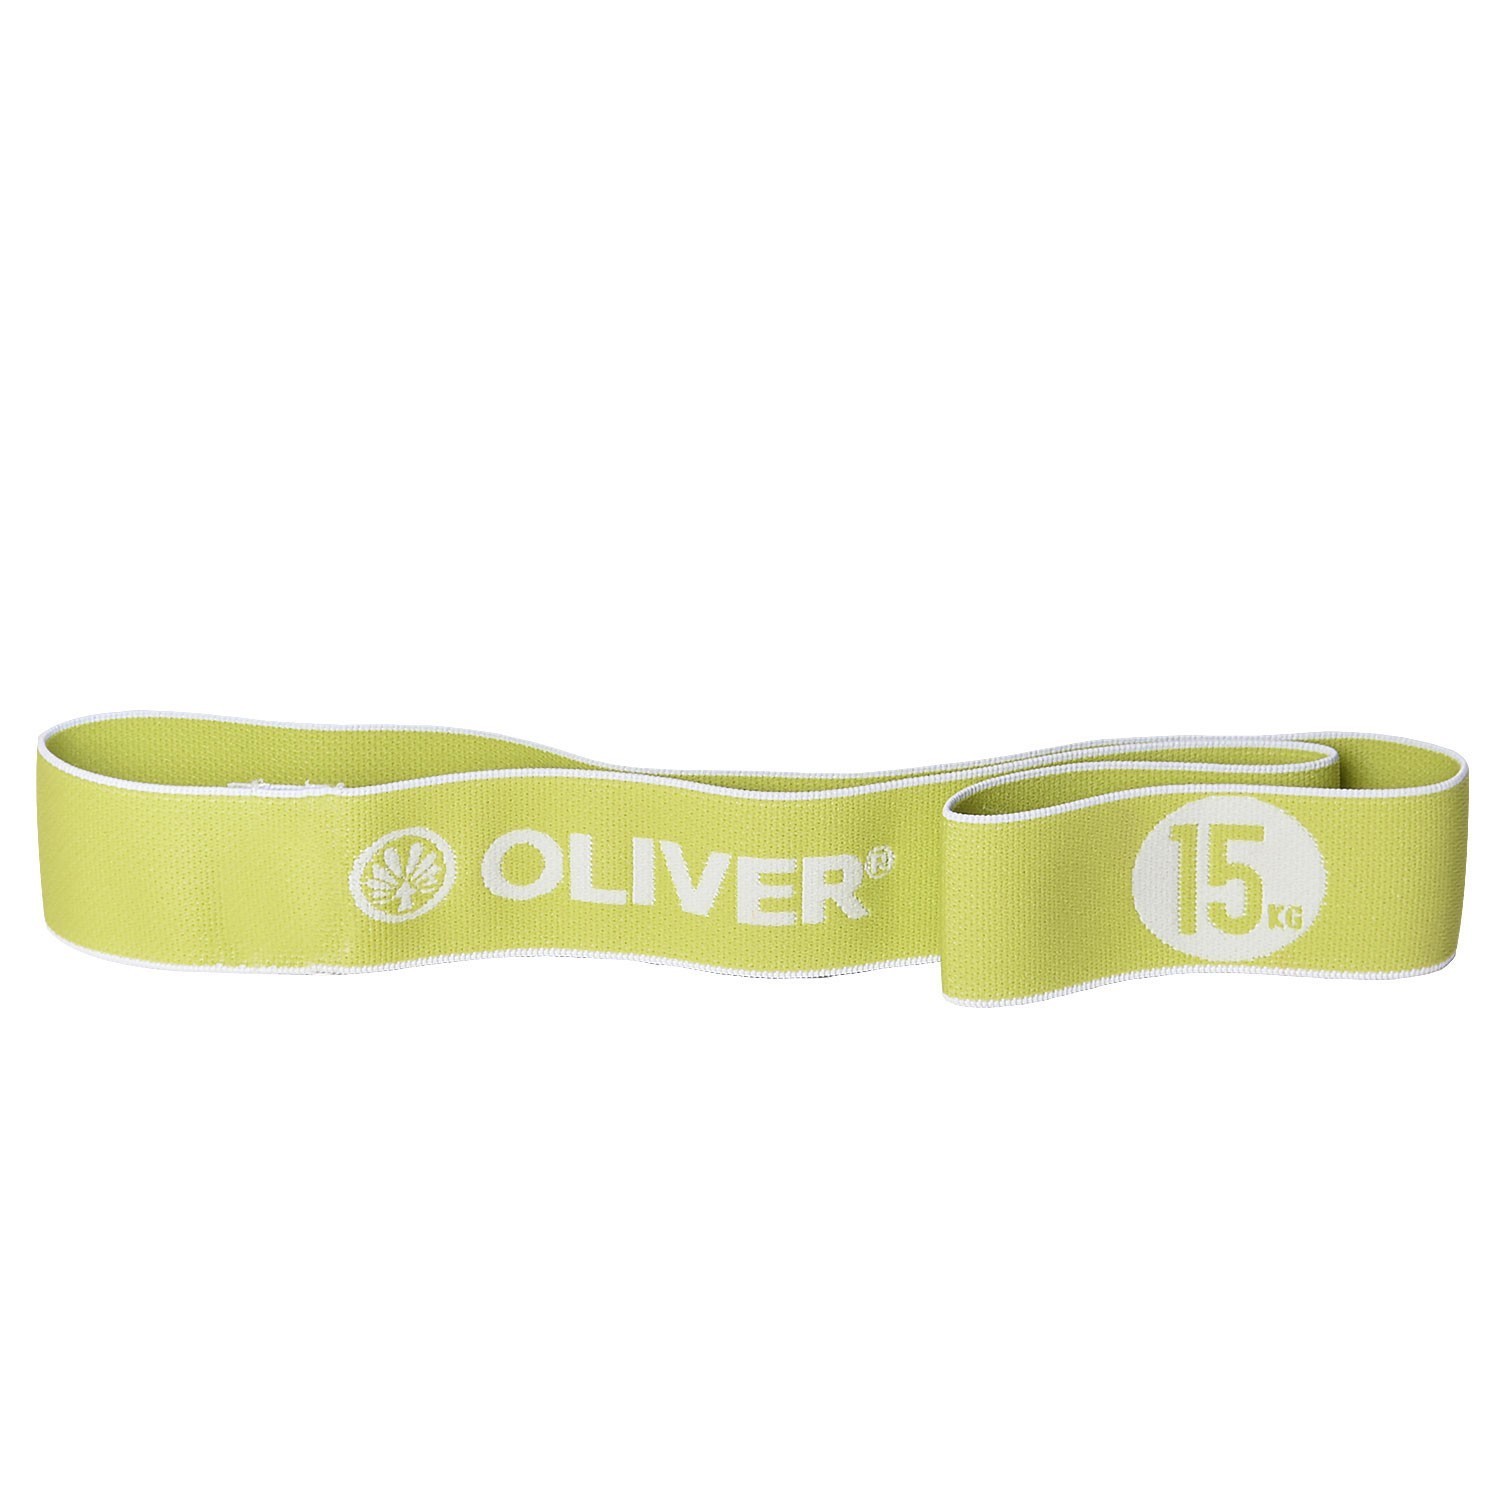 Oliver 10er Paket Tex-O Miniband -  stark 15kg